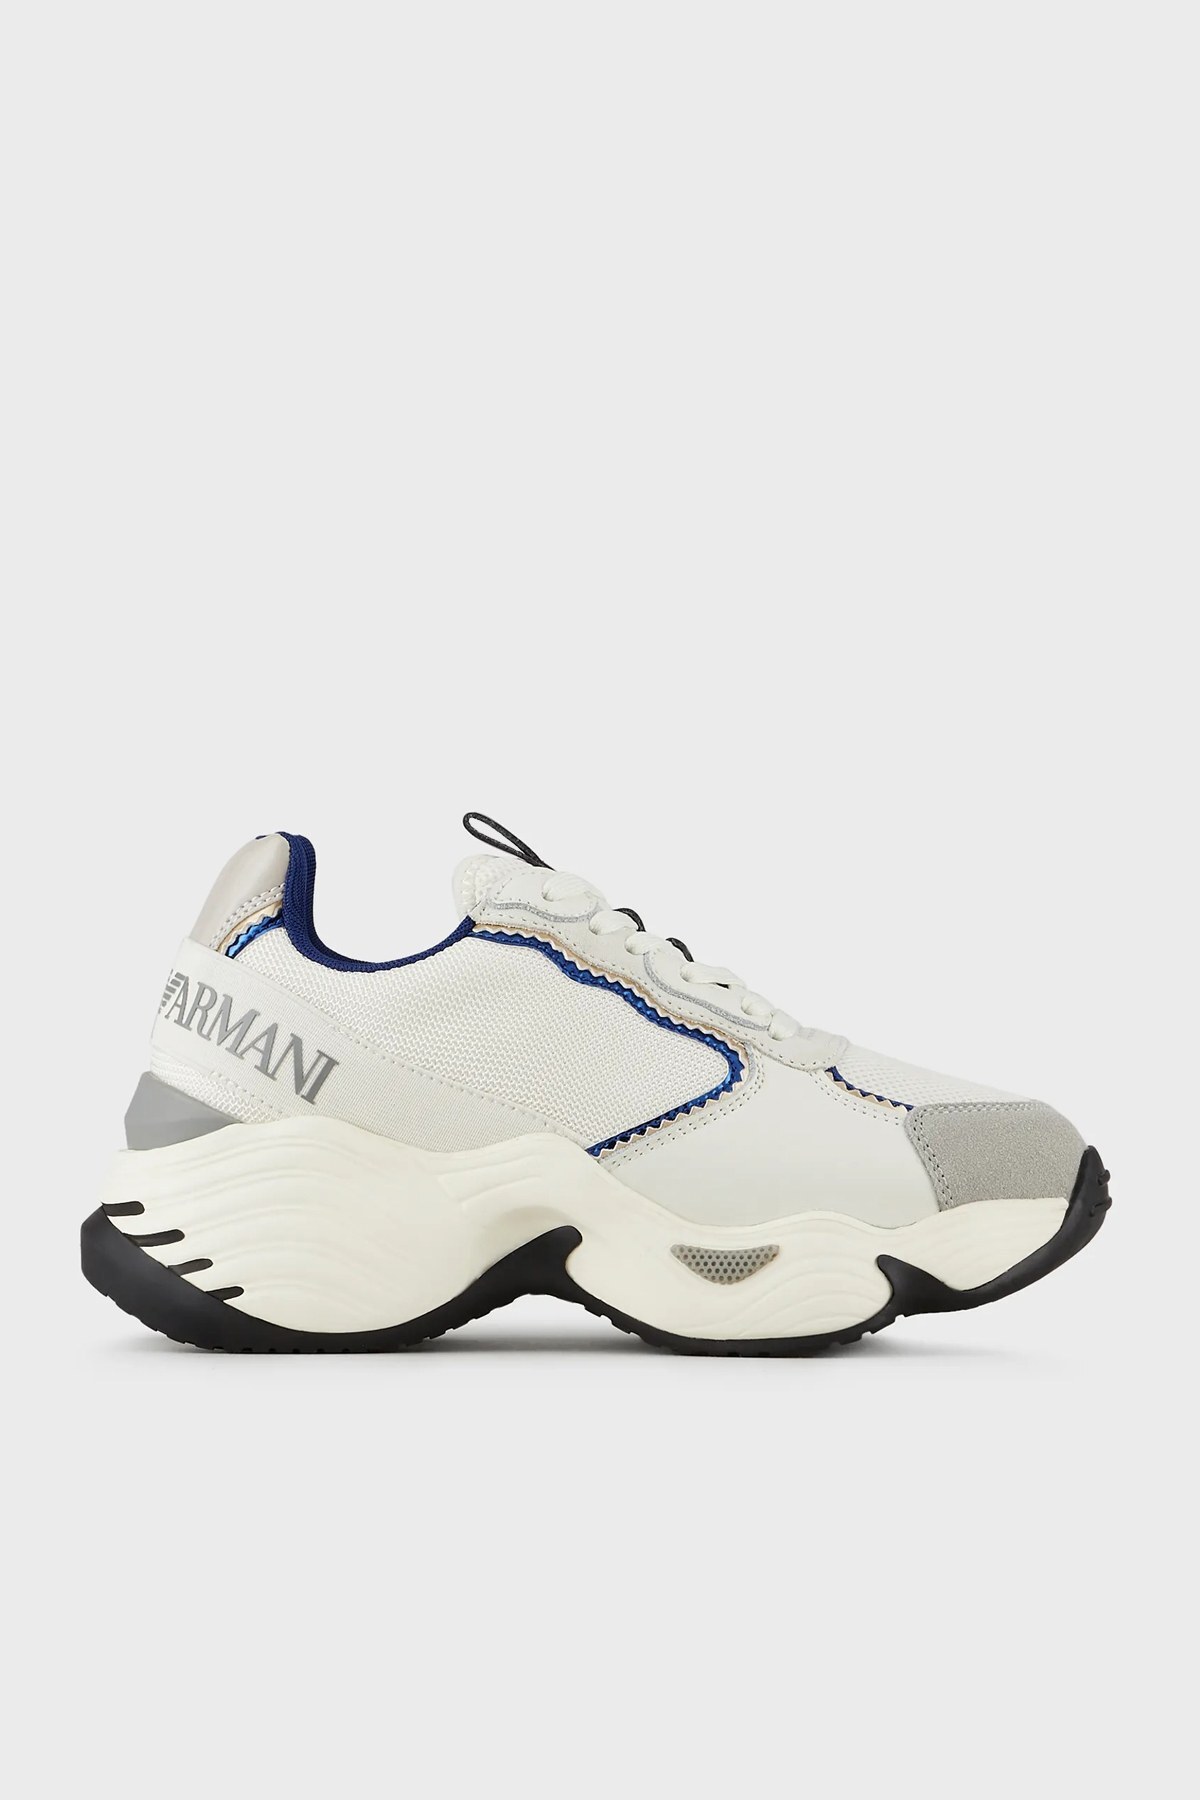 Emporio Armani Kalın Tabanlı Sneaker Bayan Ayakkabı X3X140 XM059 Q520 KREM-LACIVERT